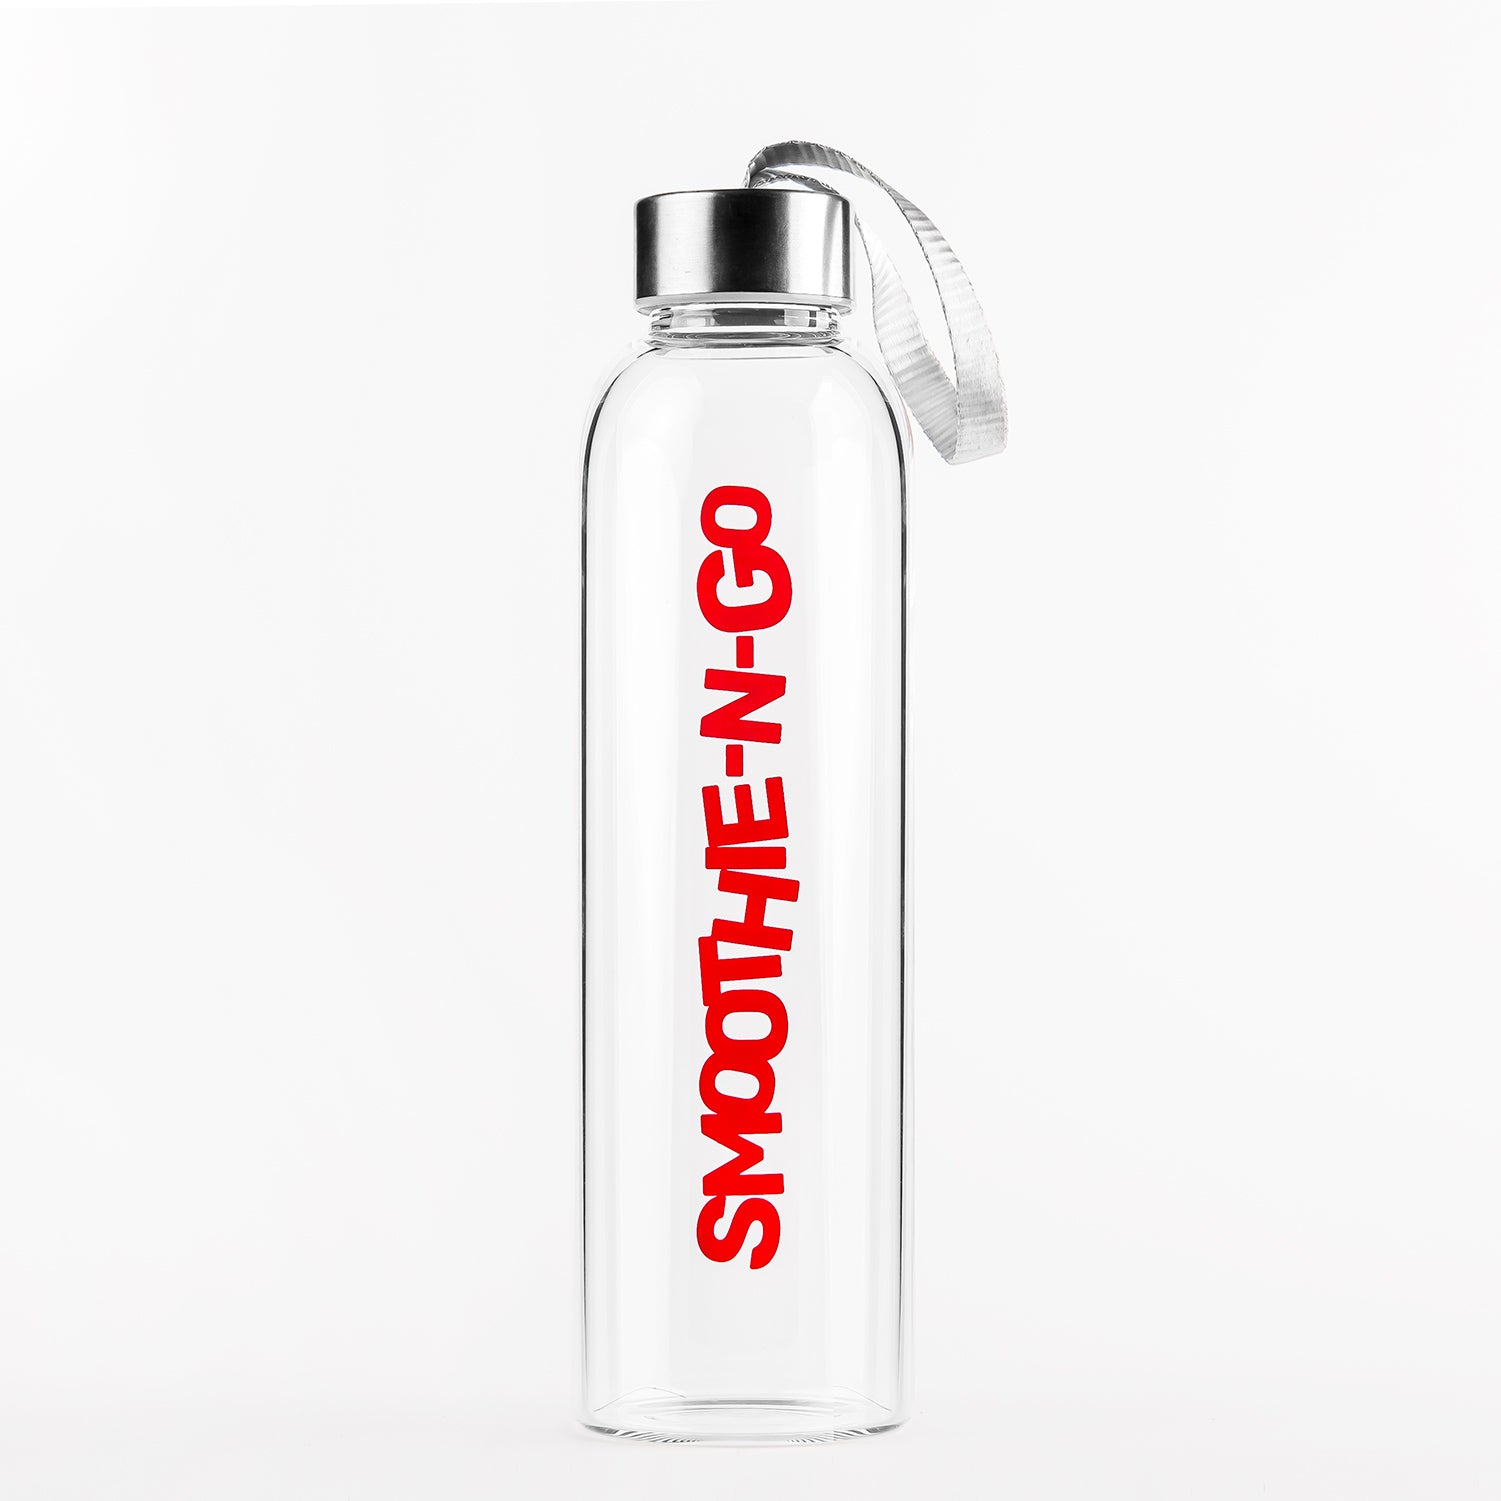 18 oz Glass Shaker Bottle